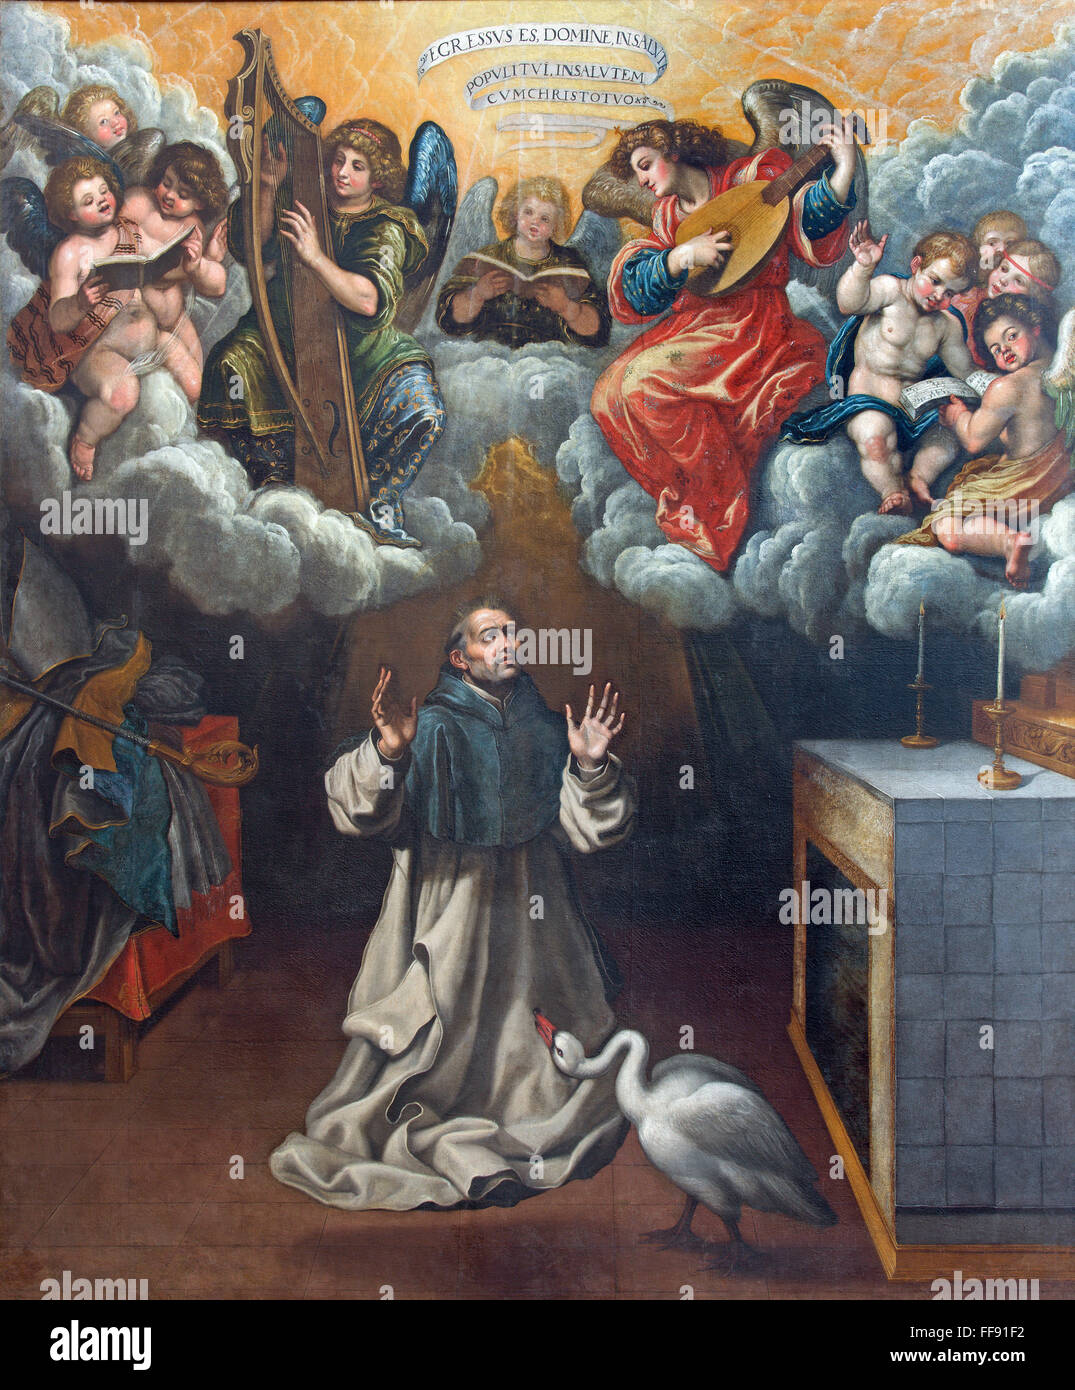 GRANADA, Spagna - 31 Maggio 2015: la pittura della visione di san Bruno fondatore dei Certosini di Vicente Carducho (1578 - 1638). Foto Stock